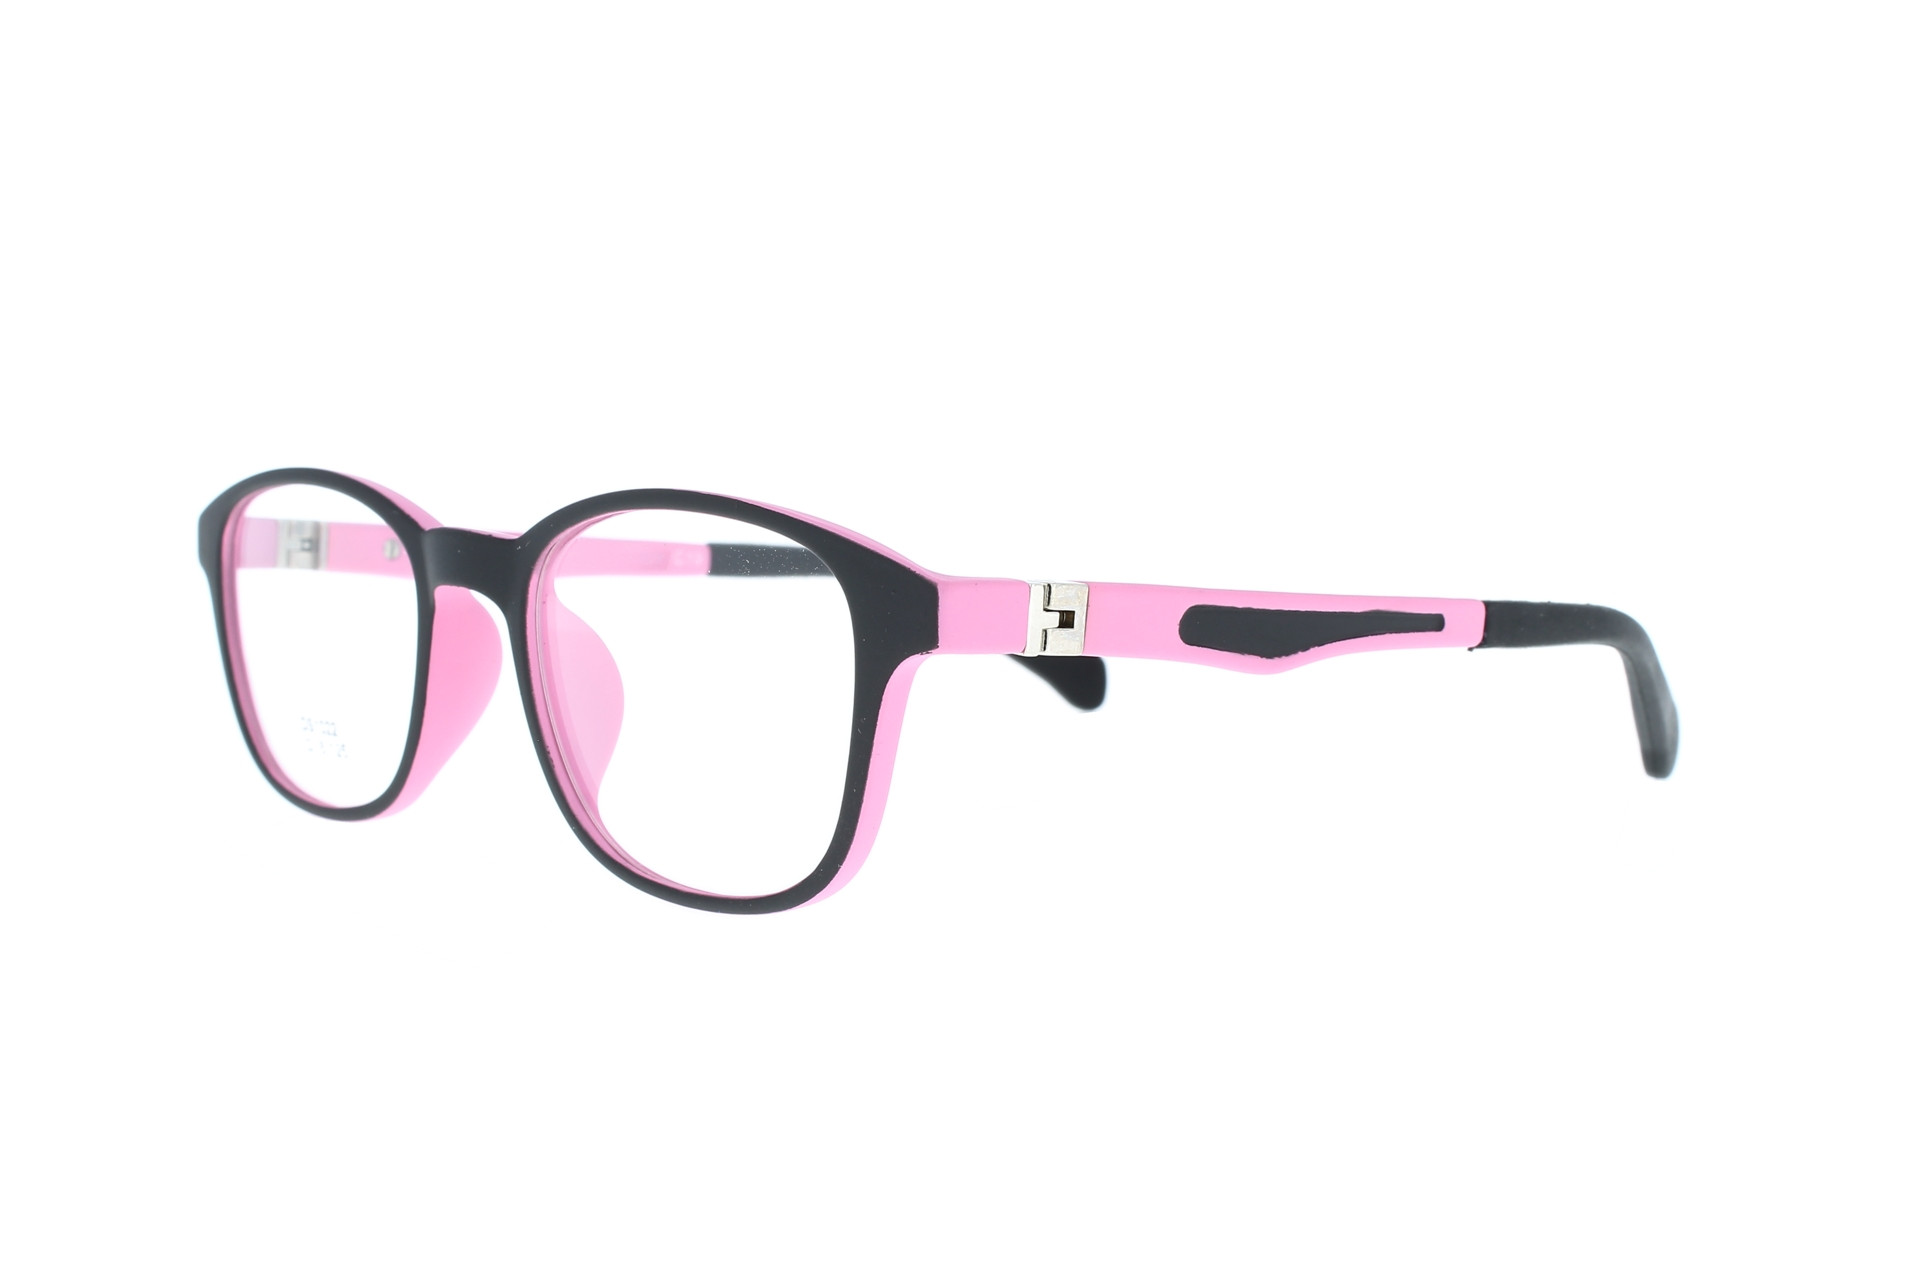 Gyerek szemüvegek és szemüvegkeretek nagy választékban alacsony áron - Optikshop